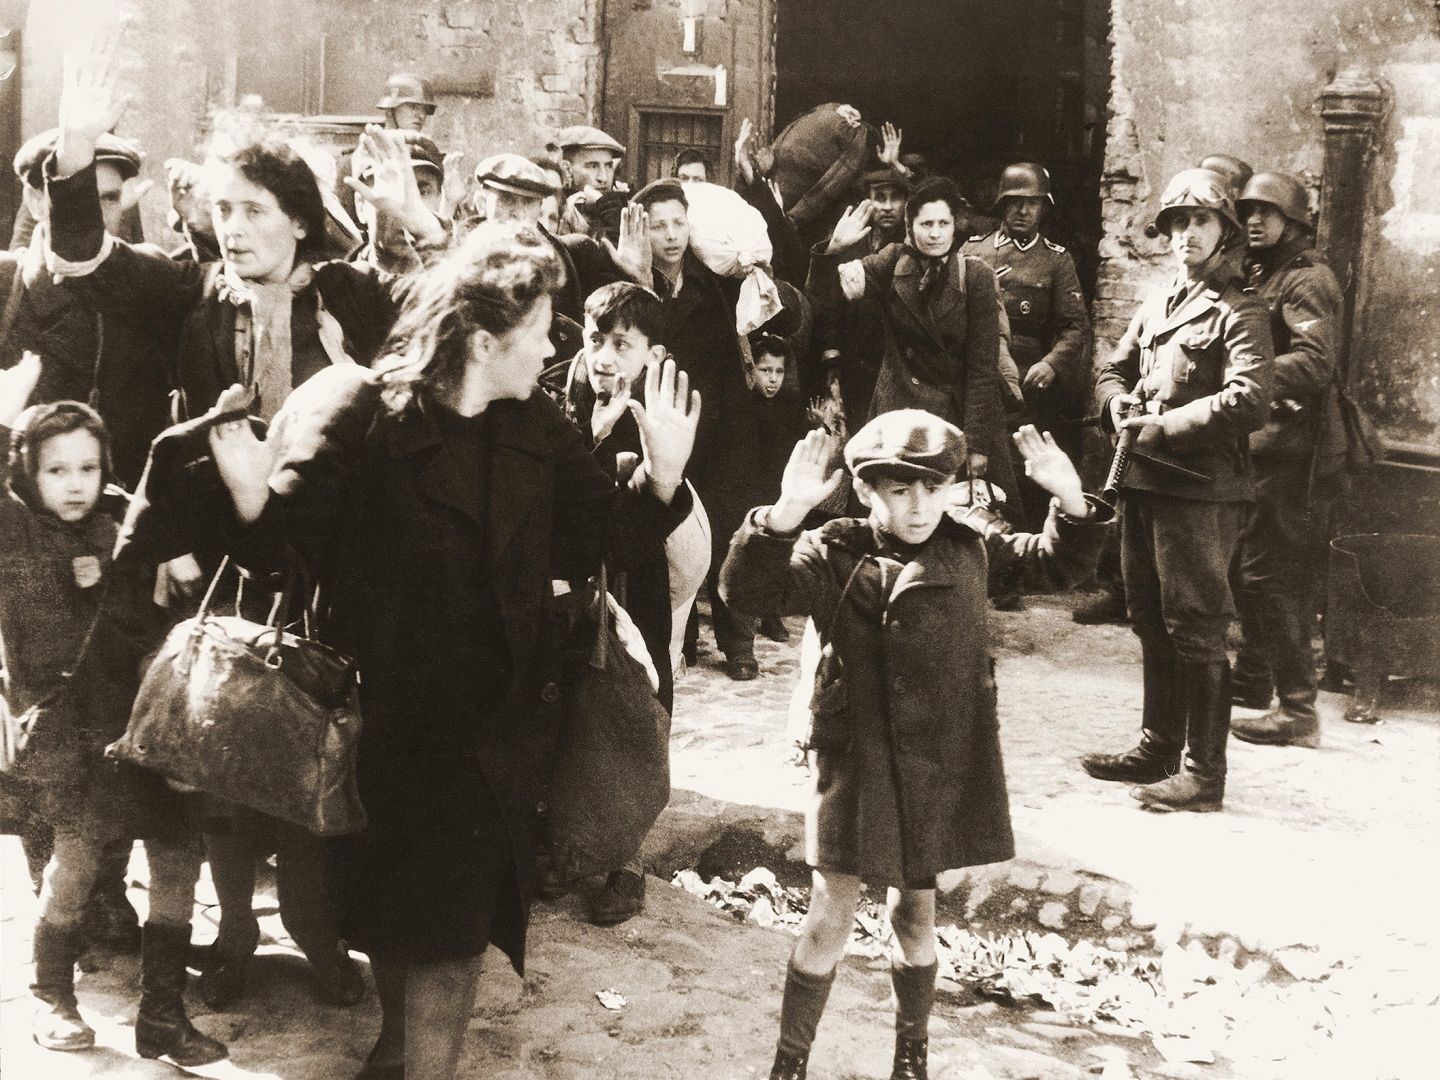 Das Foto zeigt flüchtende Menschen und Soldaten während des NS Regimes